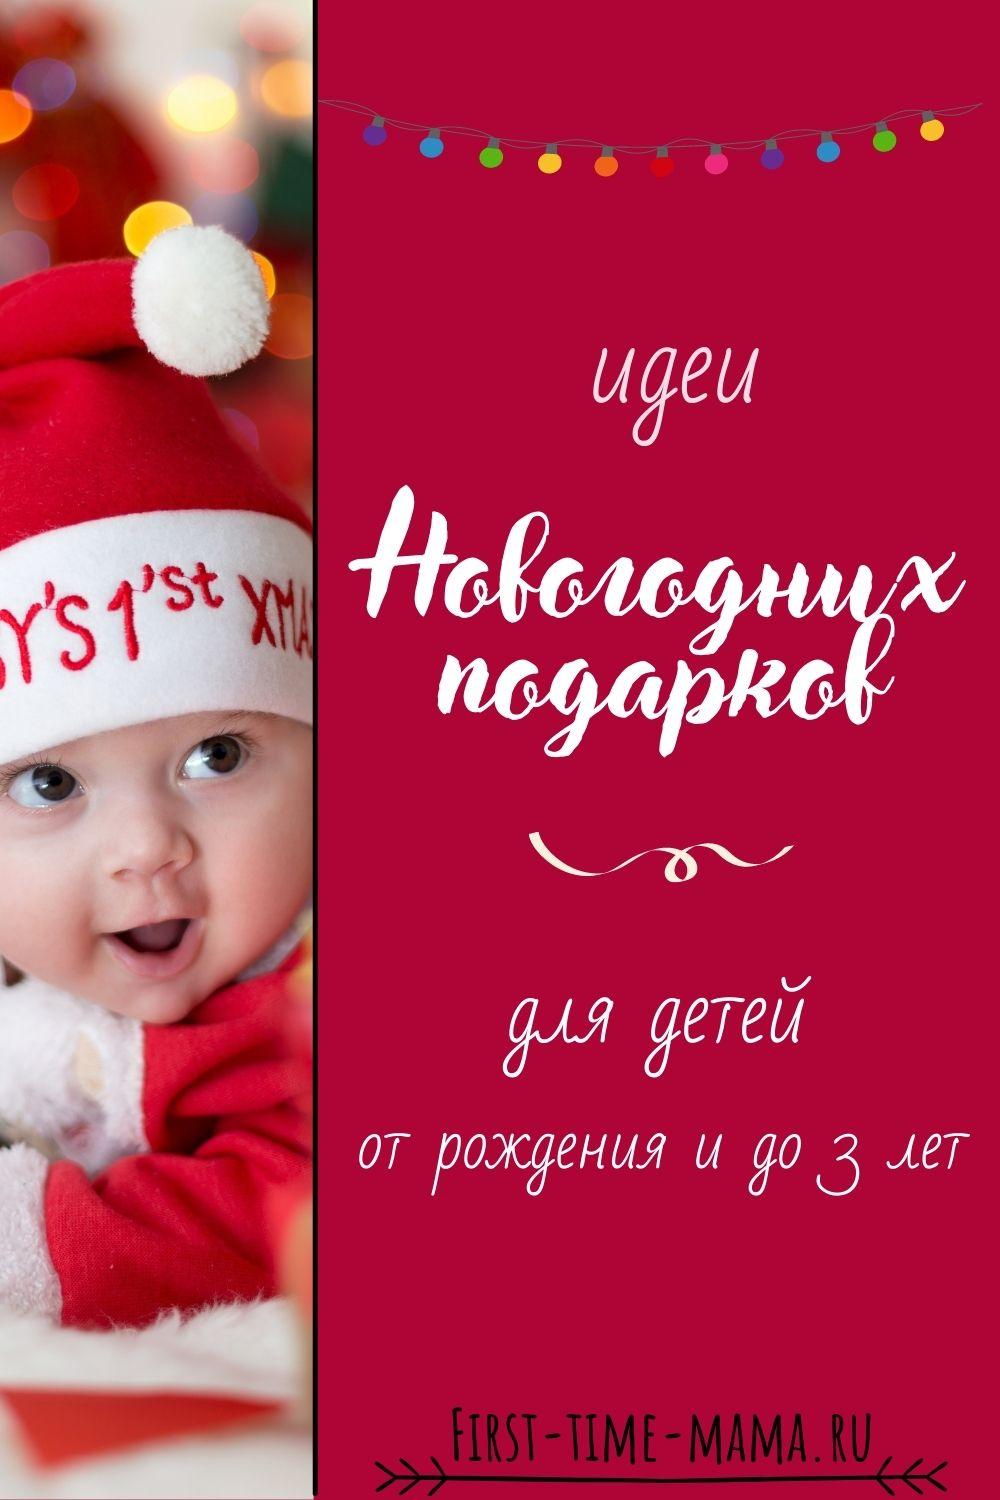 Идеи подарков на новый год для детей| Впервые мама first-time-mama.ru